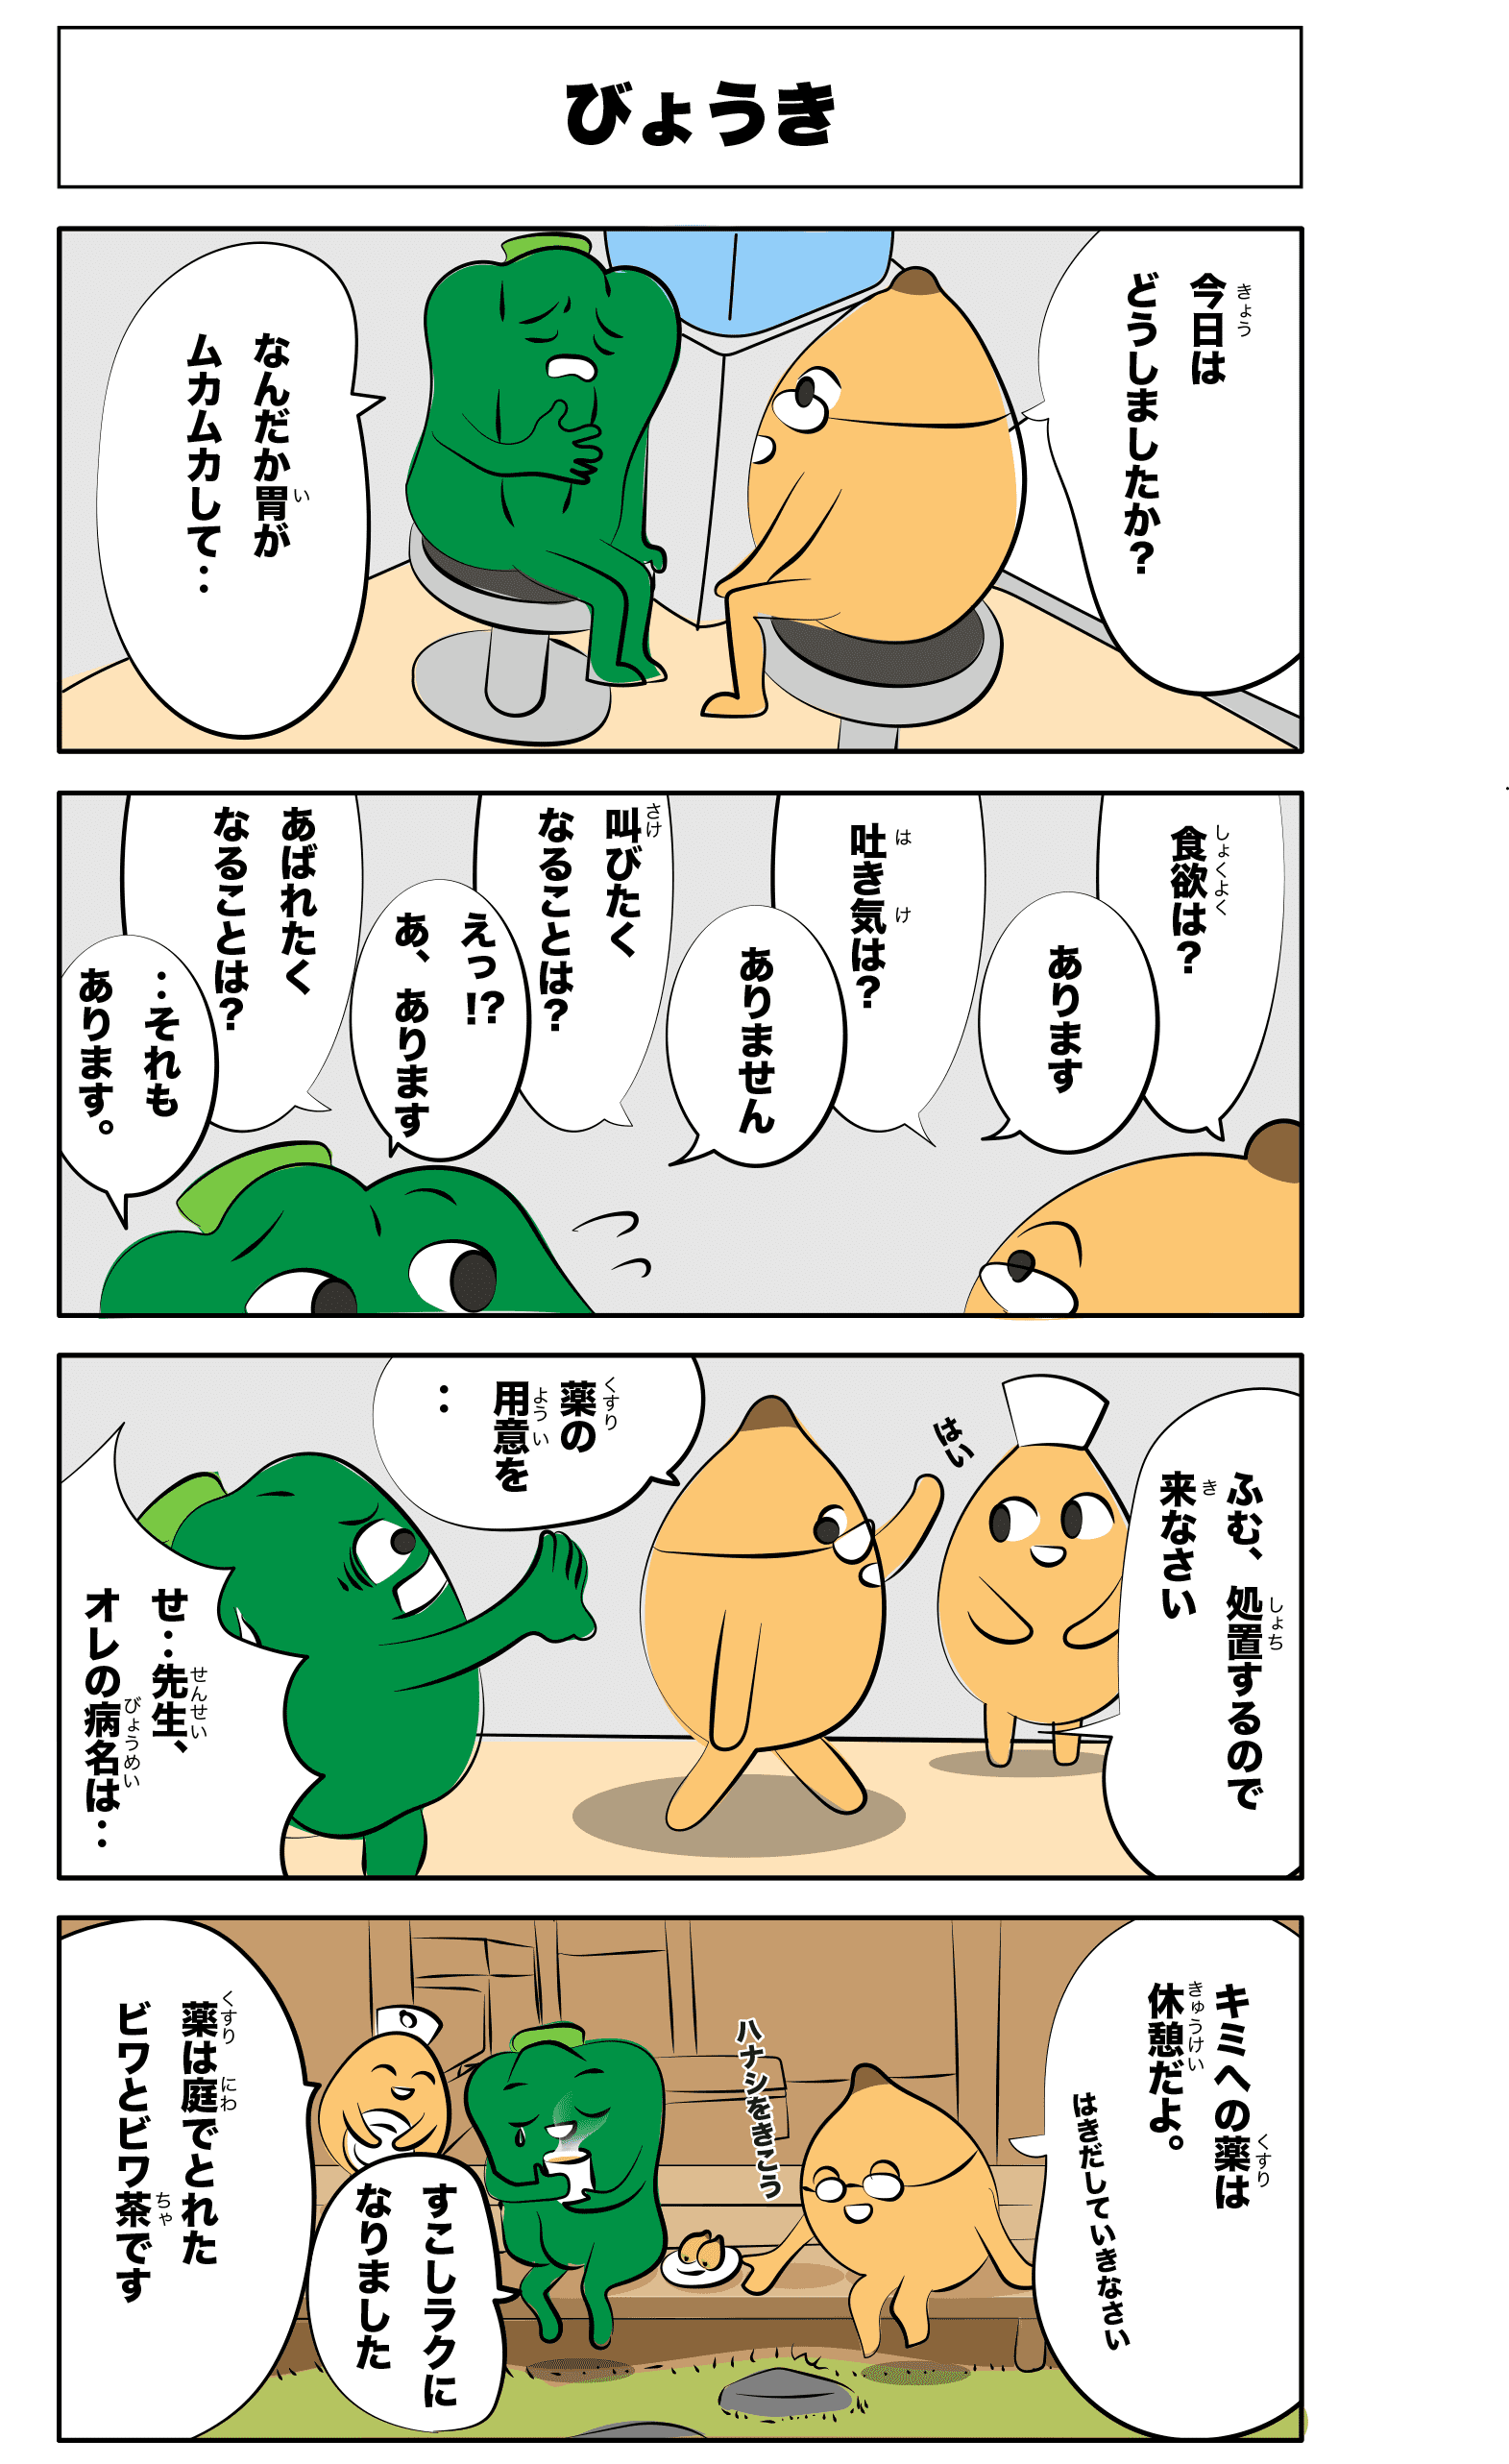 4コマ漫画「びょうき」